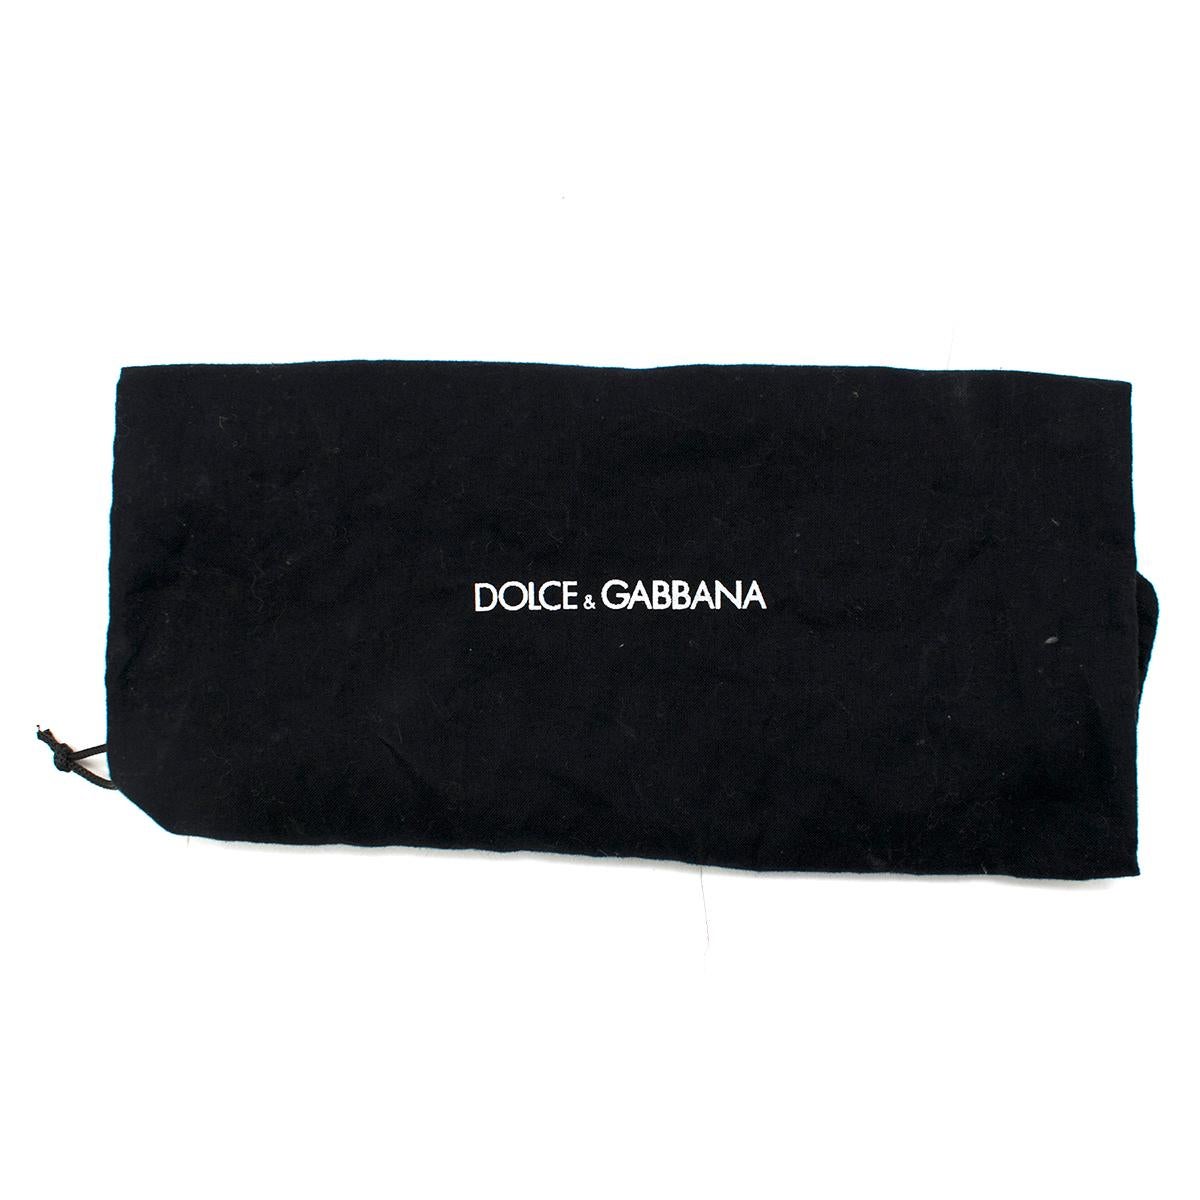  Dolce& Gabbana Embellished Floral Printed Pumps UK 3 For Sale 3